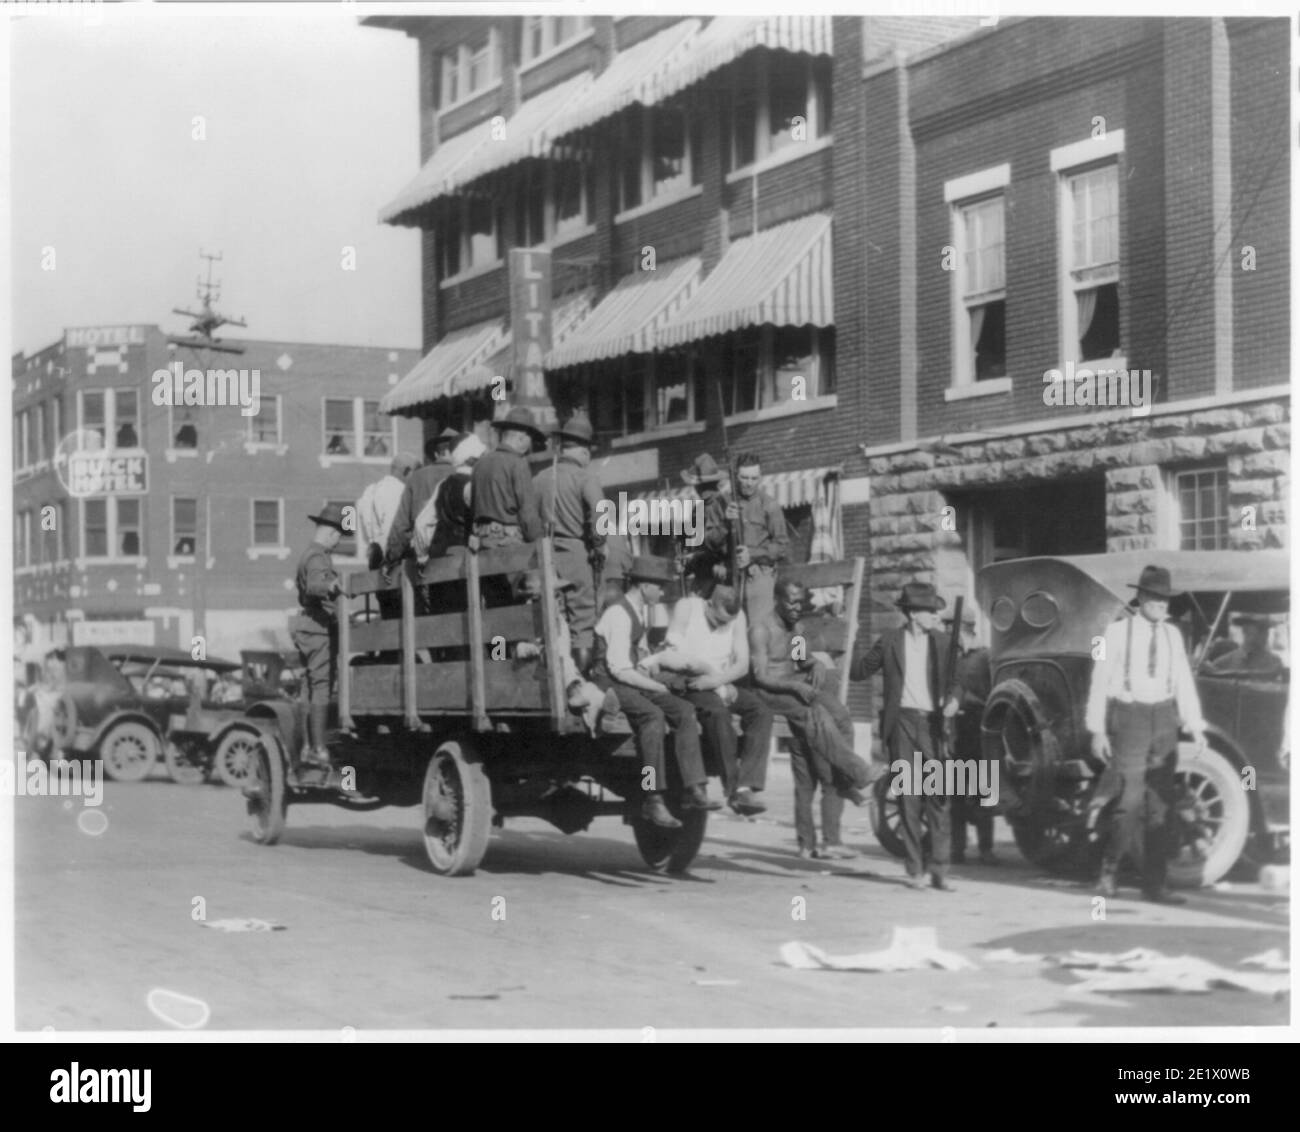 Fotografia d'epoca della Guardia Nazionale e dei cittadini feriti durante le rivolte di Tulsa del 1921. Camion sulla strada vicino all'Hotel Litan. Foto Stock